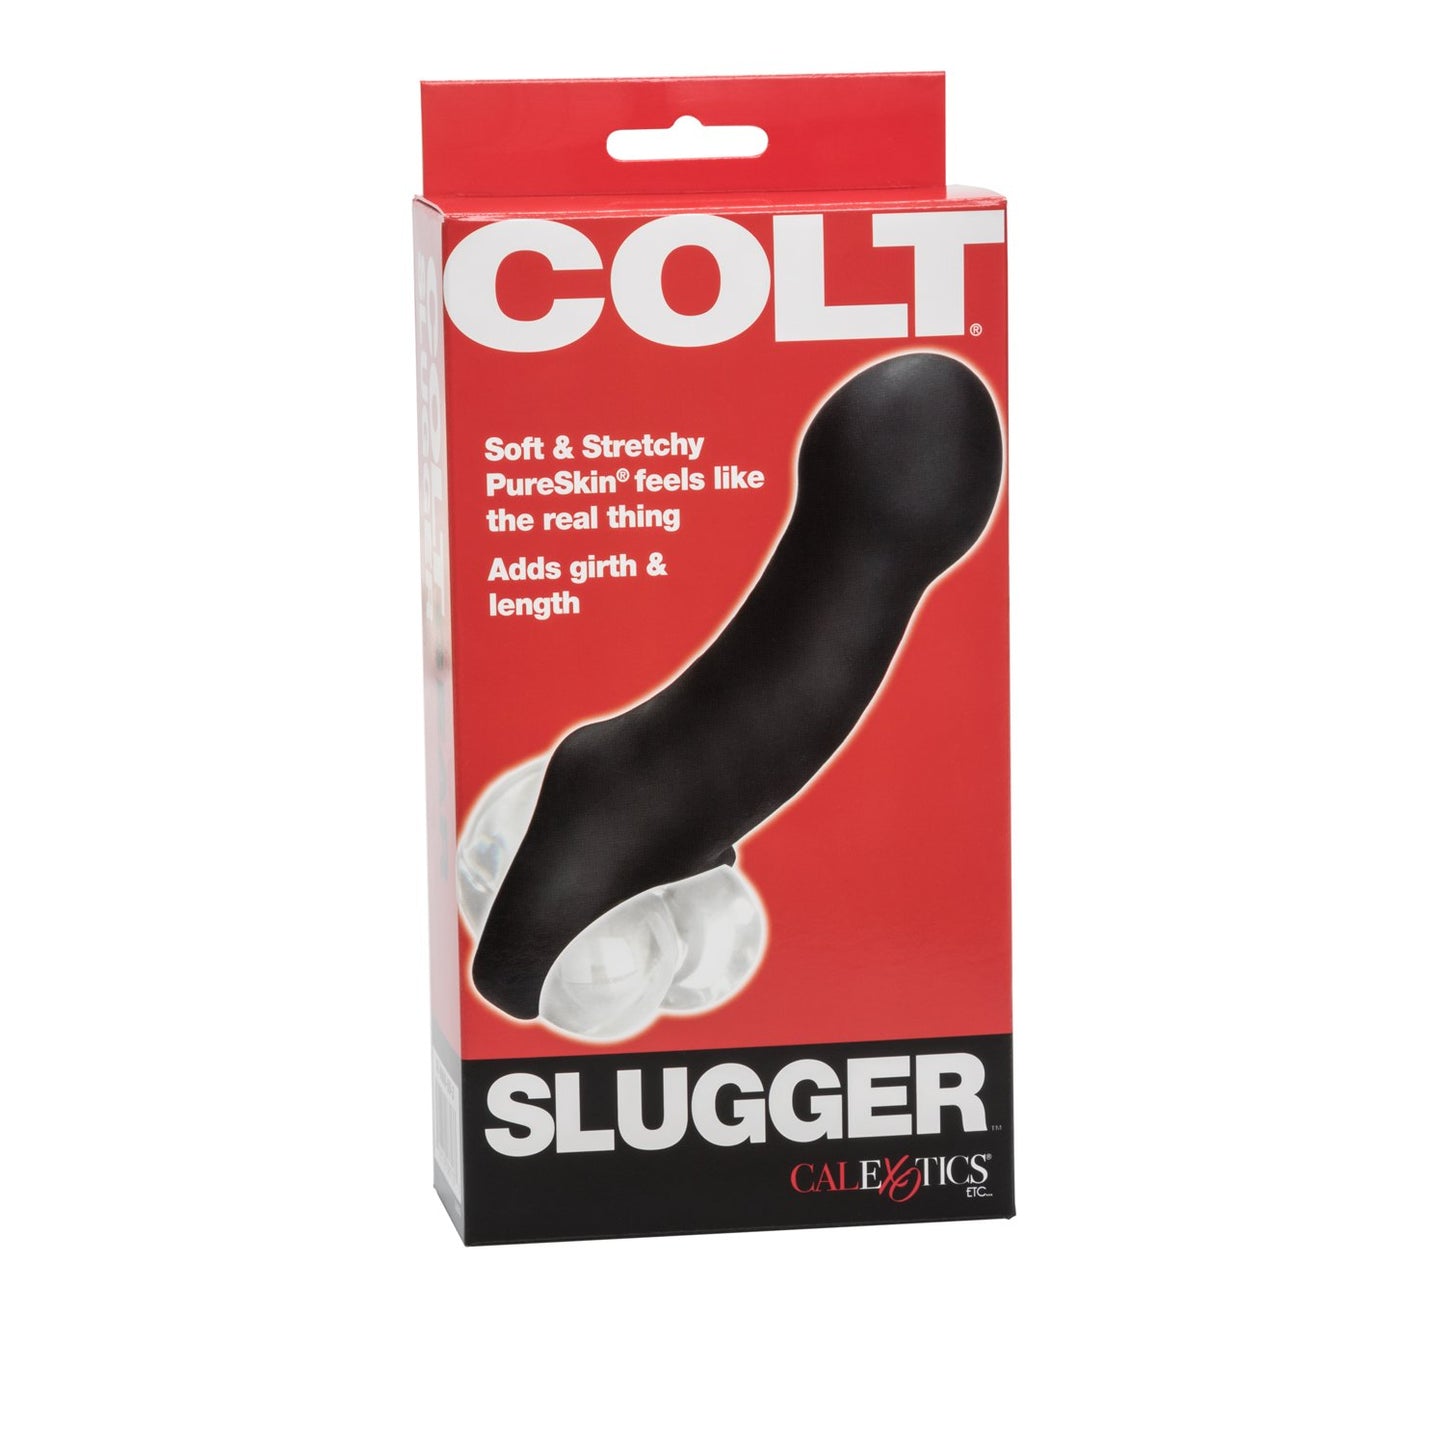 COLT Slugger